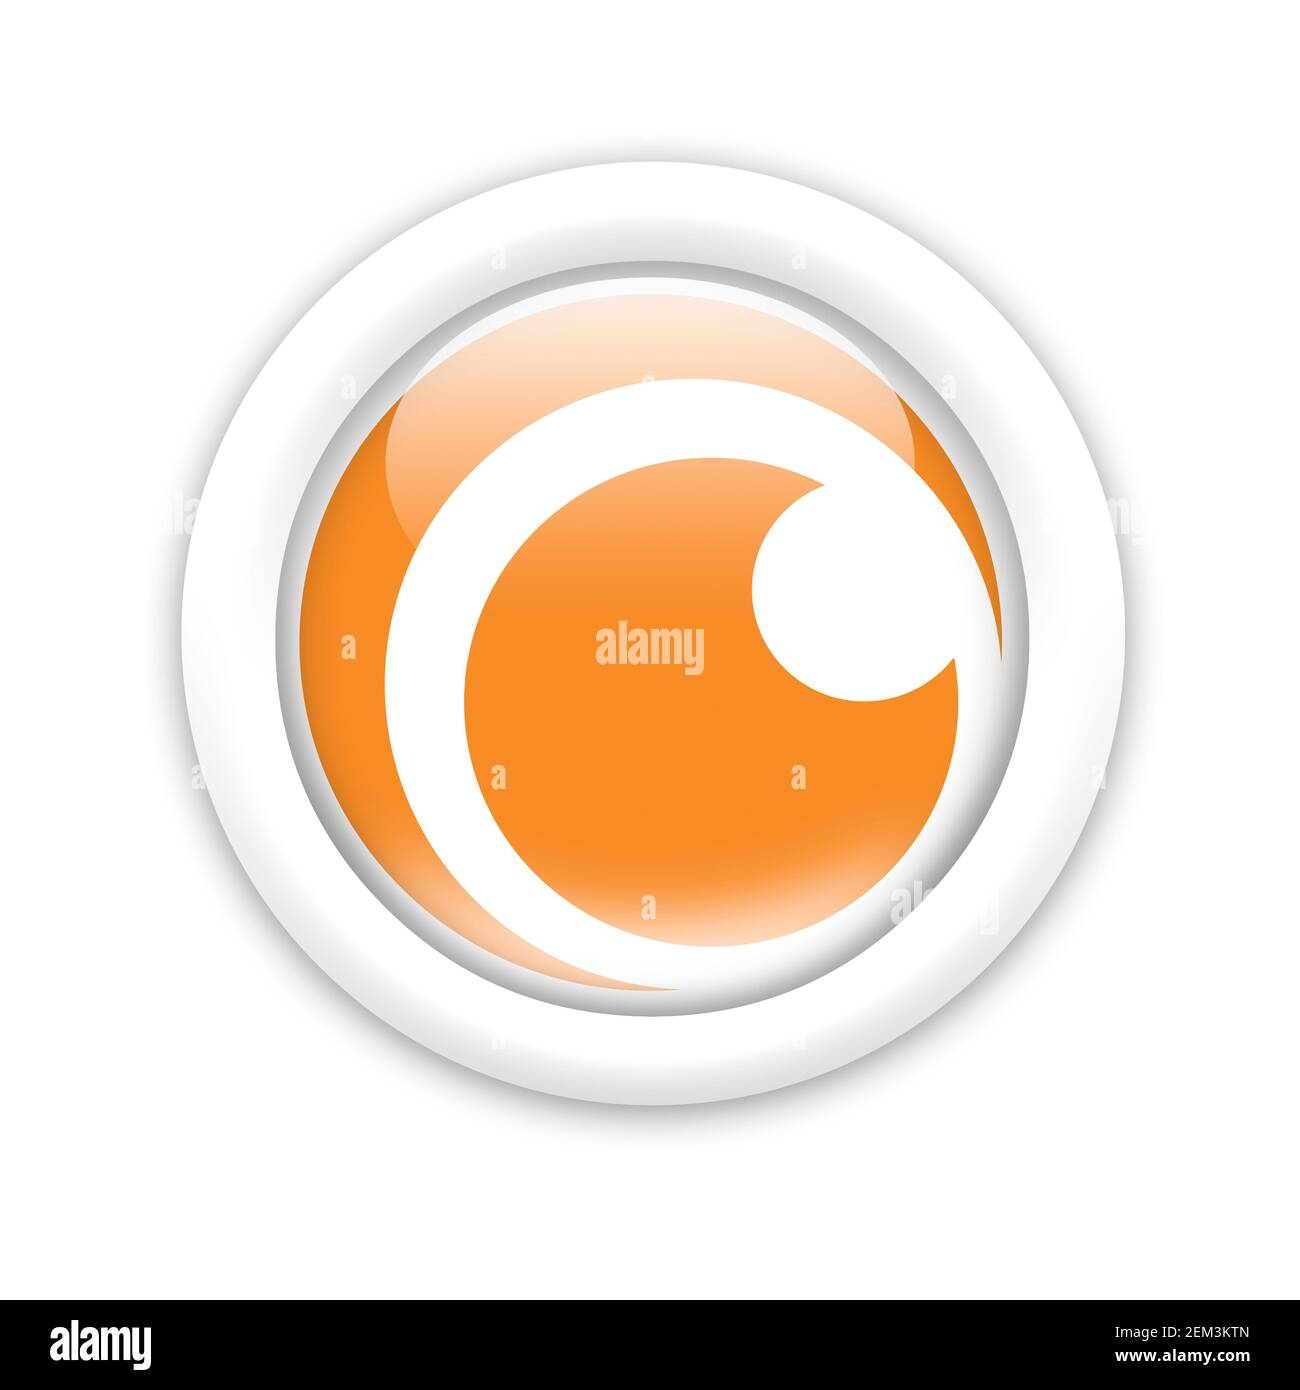 Crunchyroll immagini e fotografie stock ad alta risoluzione - Alamy